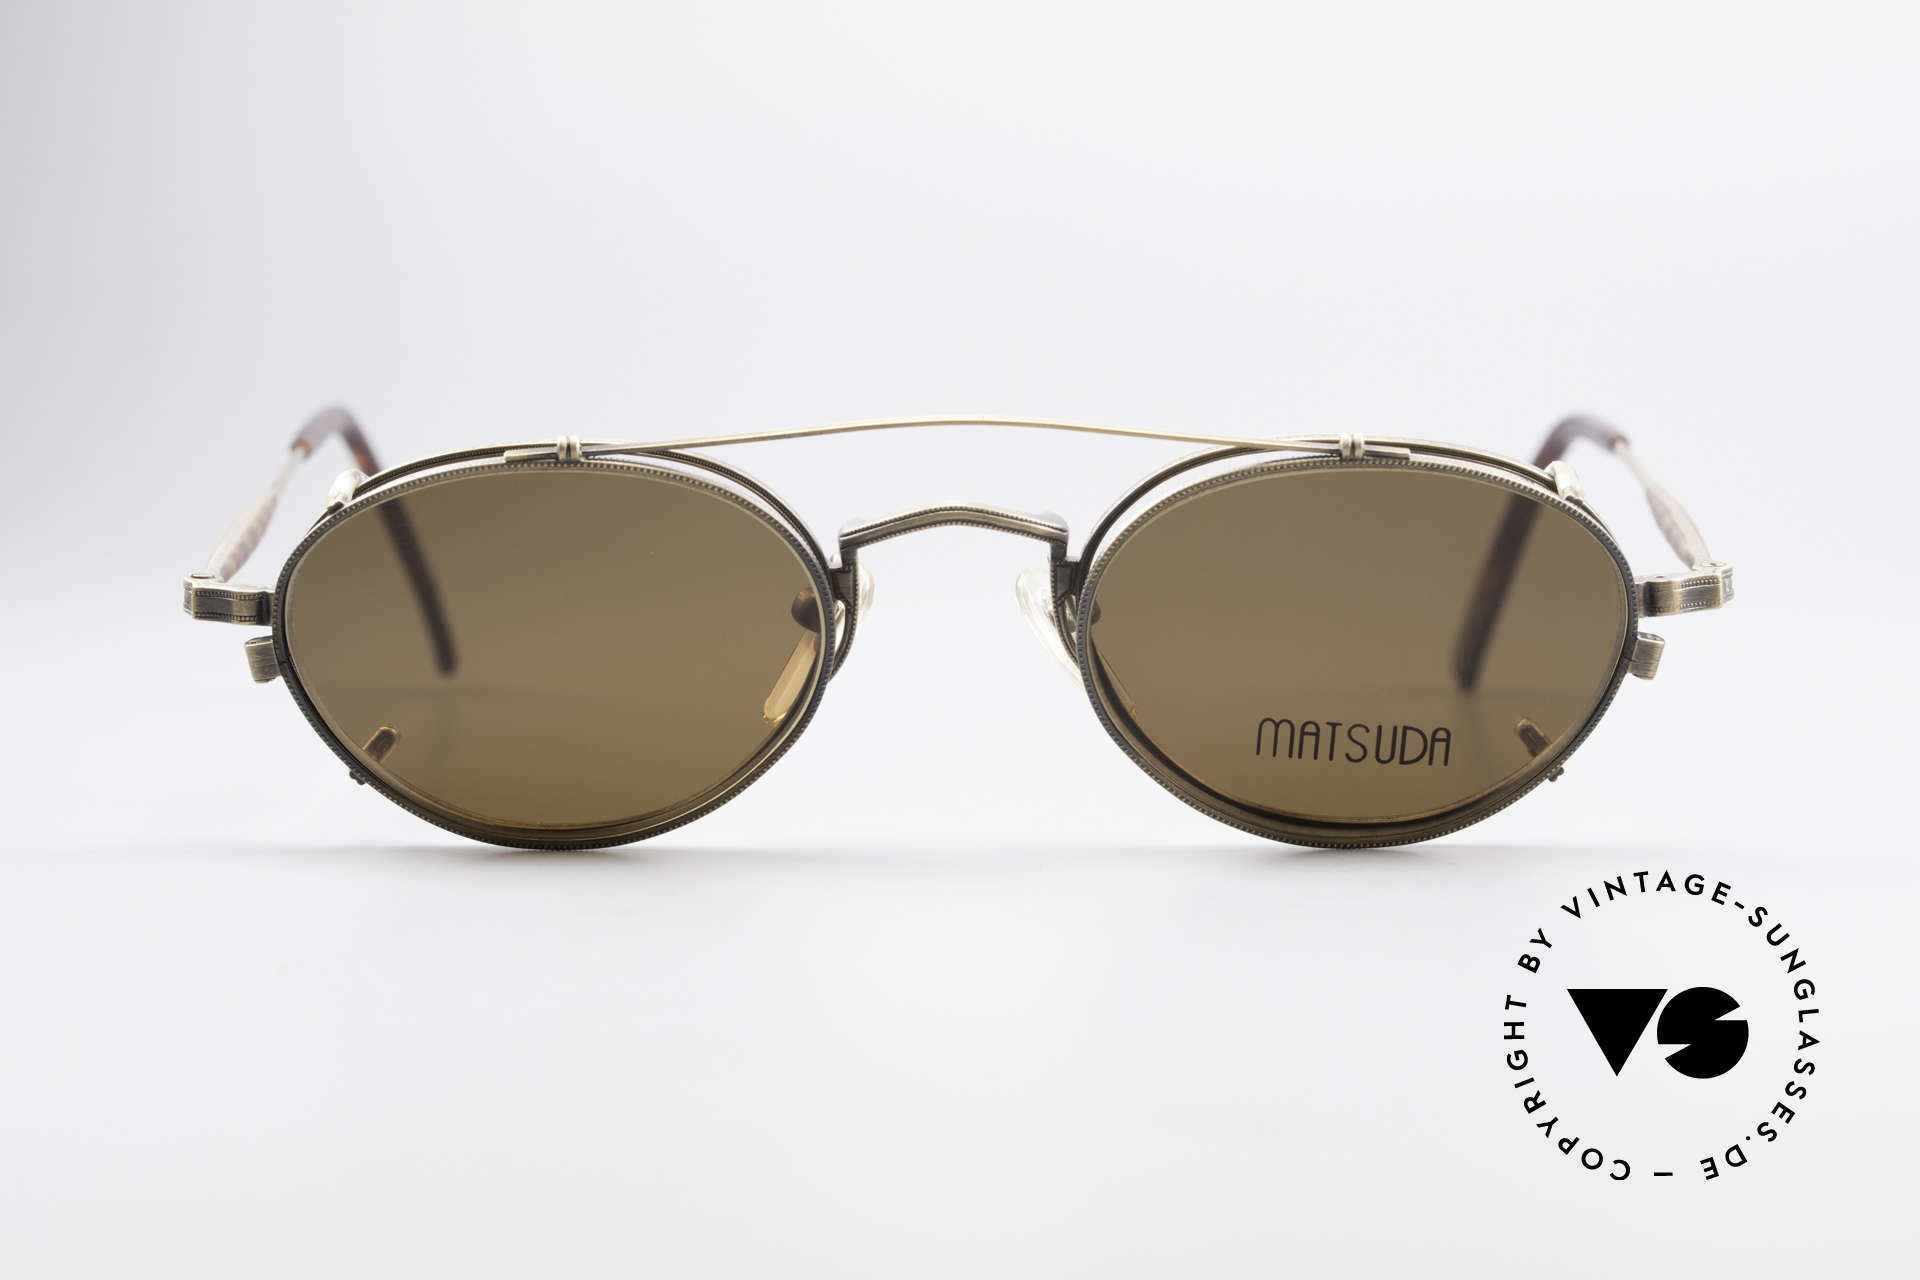 Matsuda 10102 Steampunk Vintage Brille, 'Steampunk-Sonnenbrille' der jap. 'Design-Manufaktur', Passend für Herren